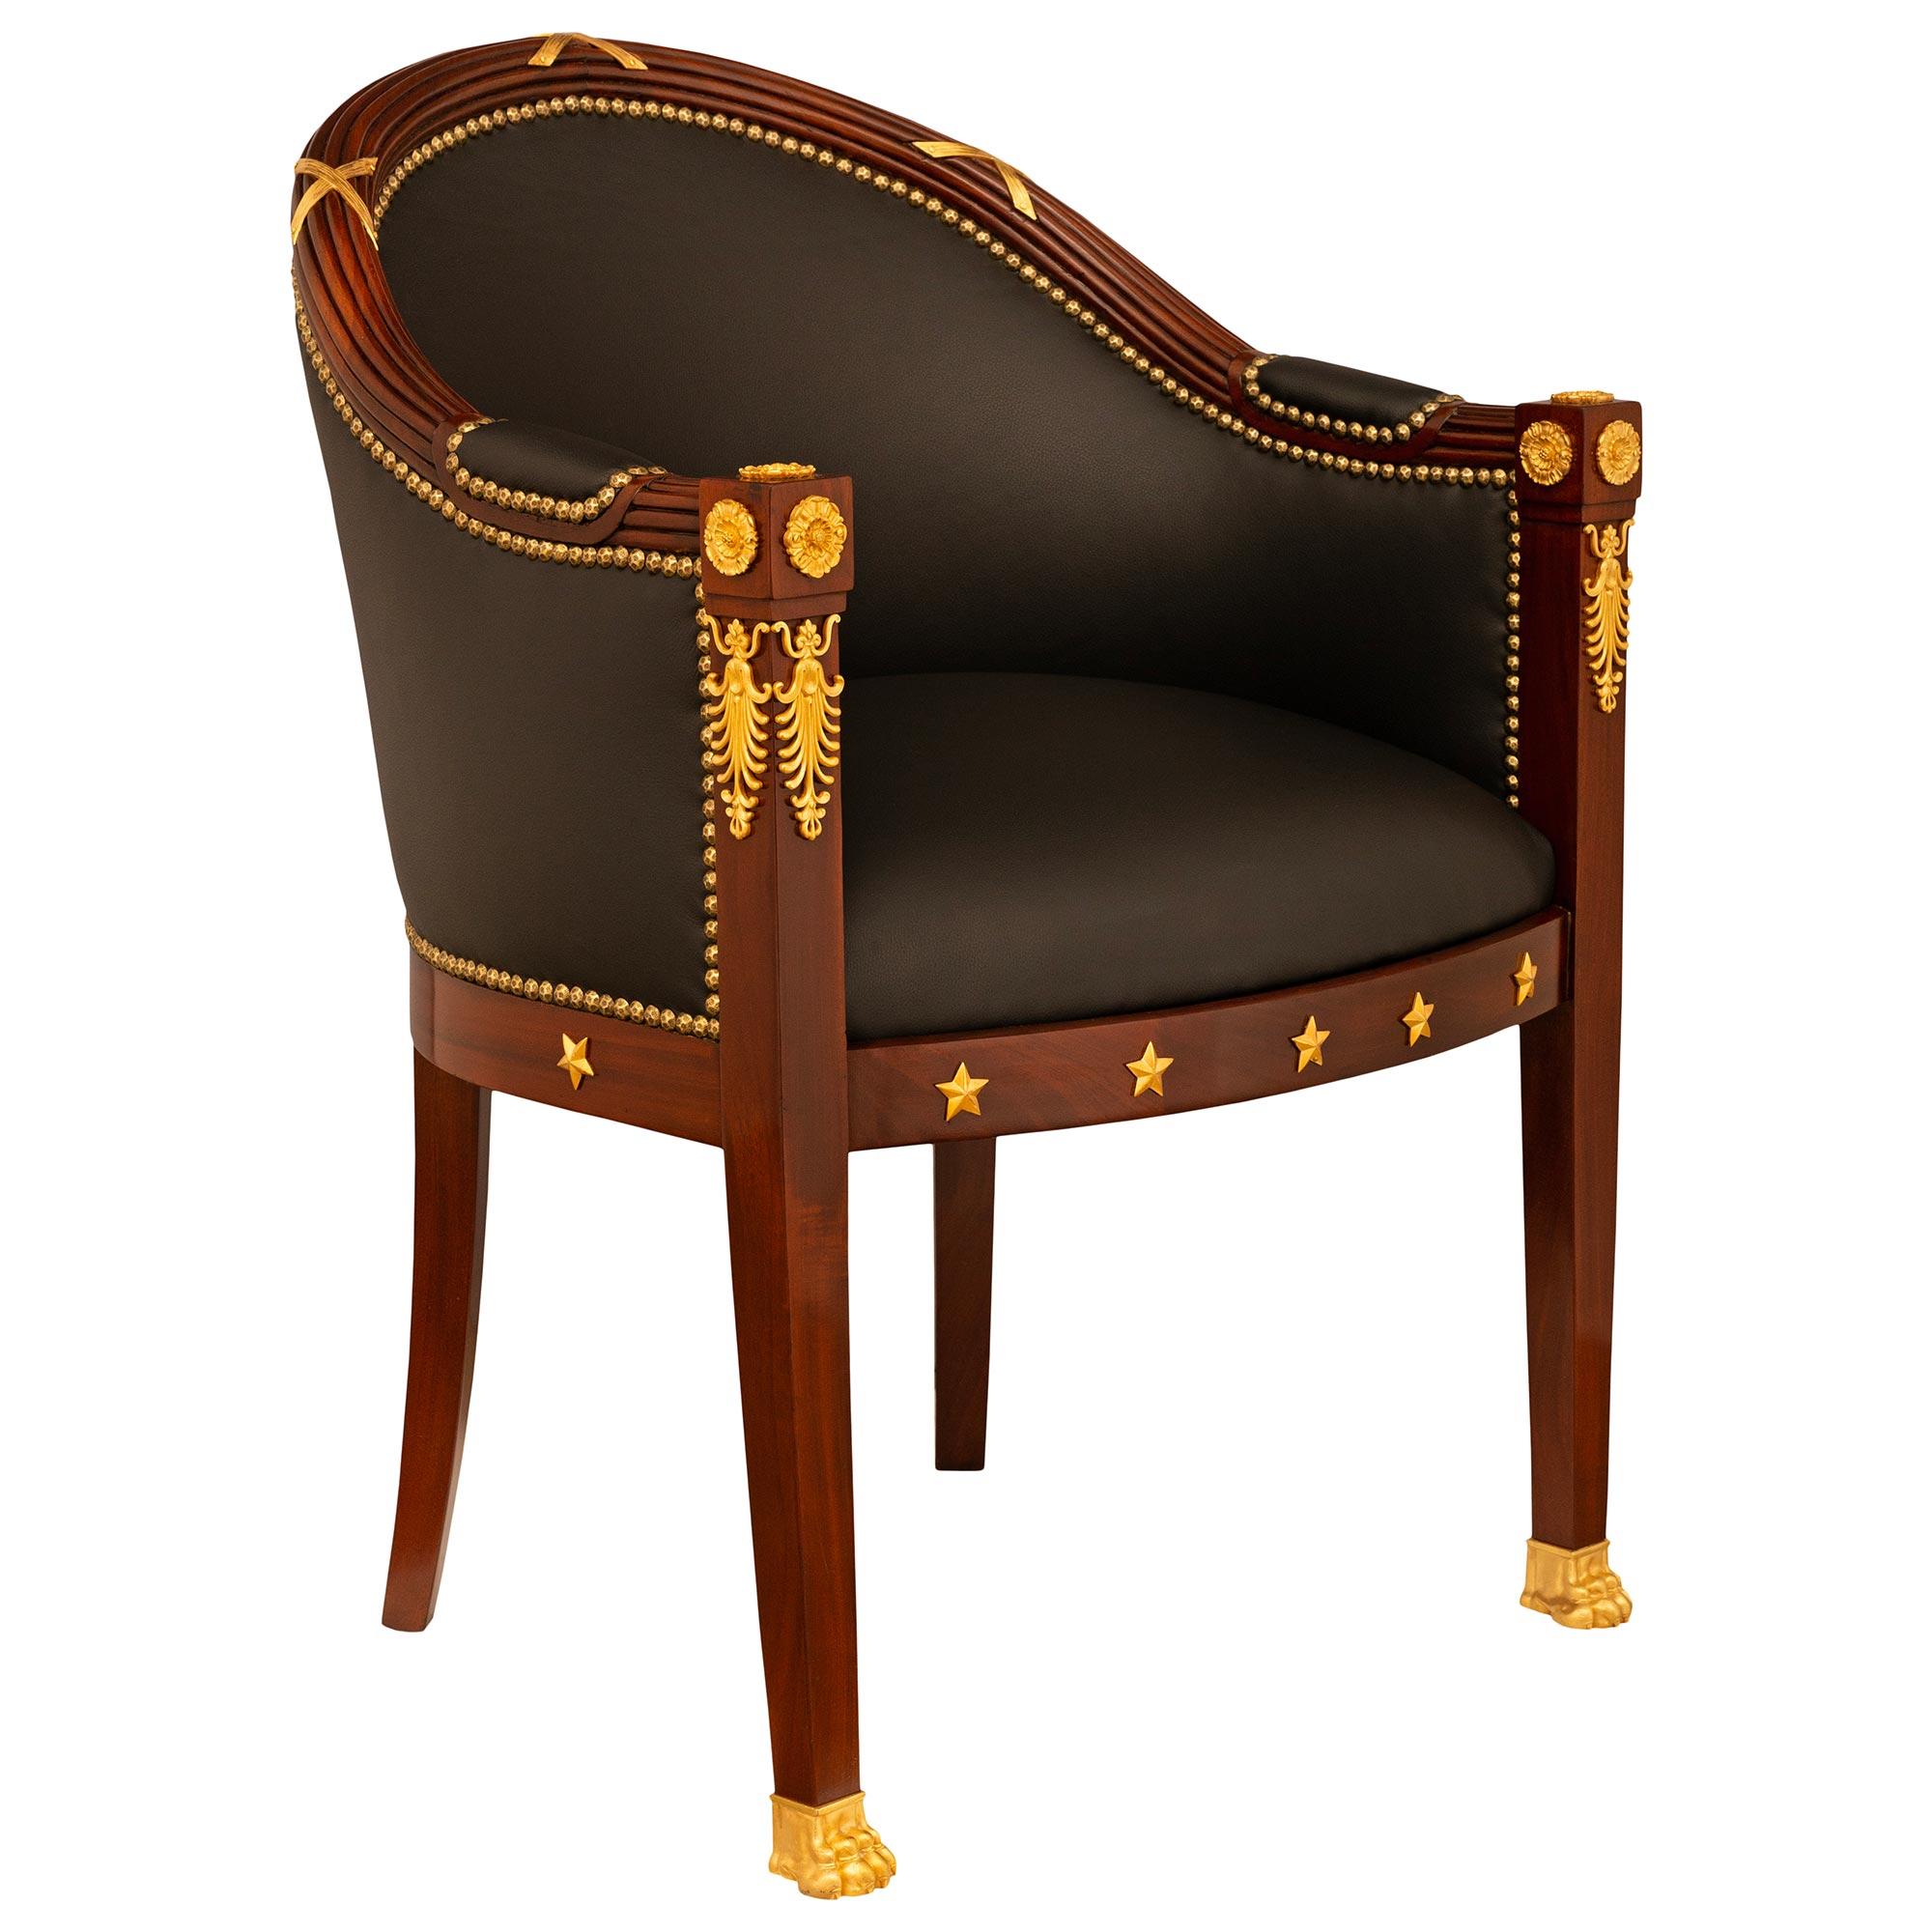 Magnifique fauteuil Empire du XIXe siècle en acajou et bronze doré. Le fauteuil repose sur quatre pieds carrés et légèrement incurvés, les pieds avant étant ornés de pattes en bronze doré. Le tablier avant droit est orné de cinq étoiles en bronze